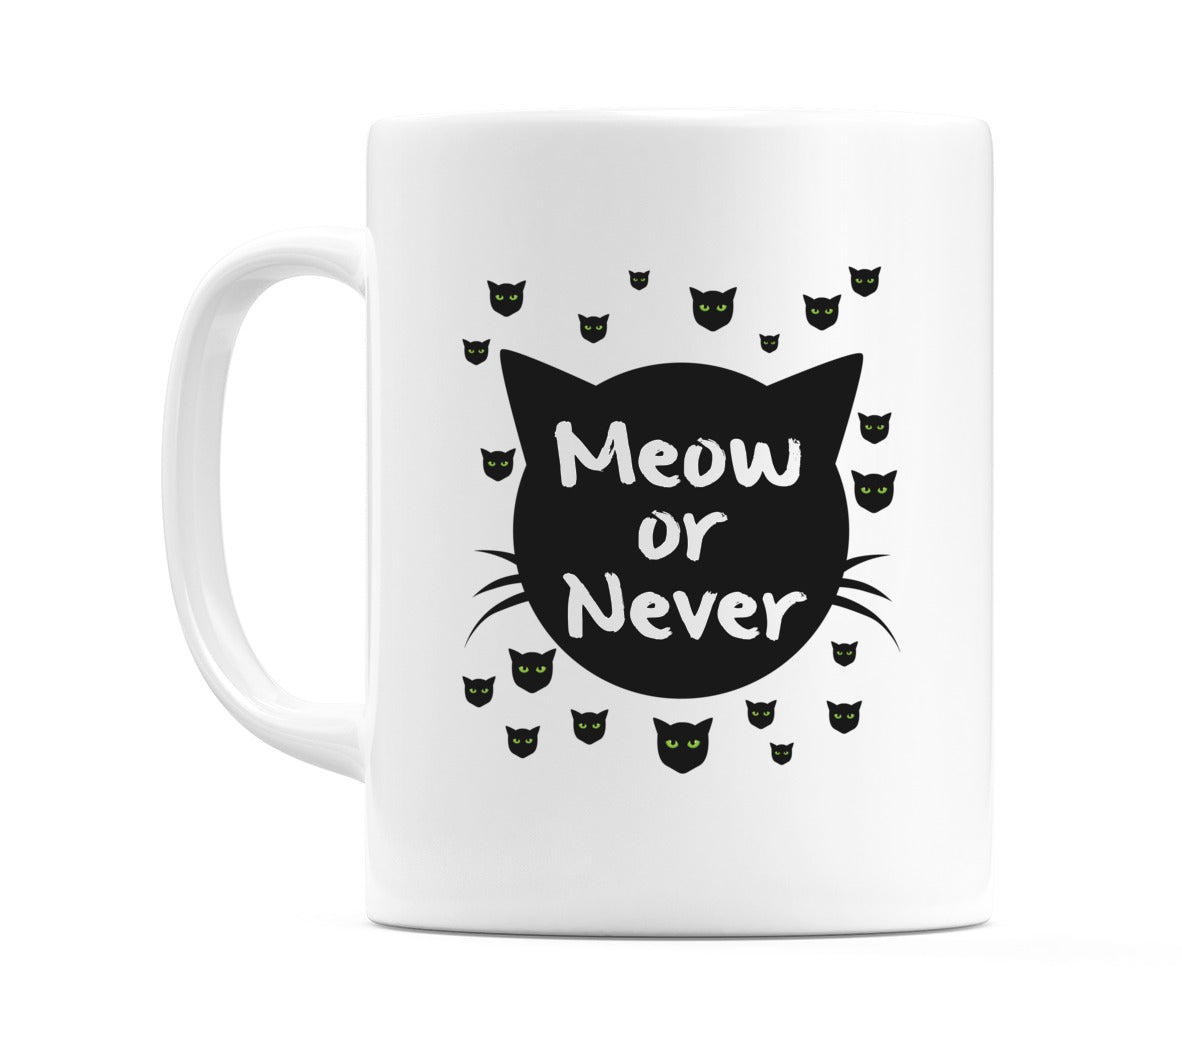 Meow or Never Mug